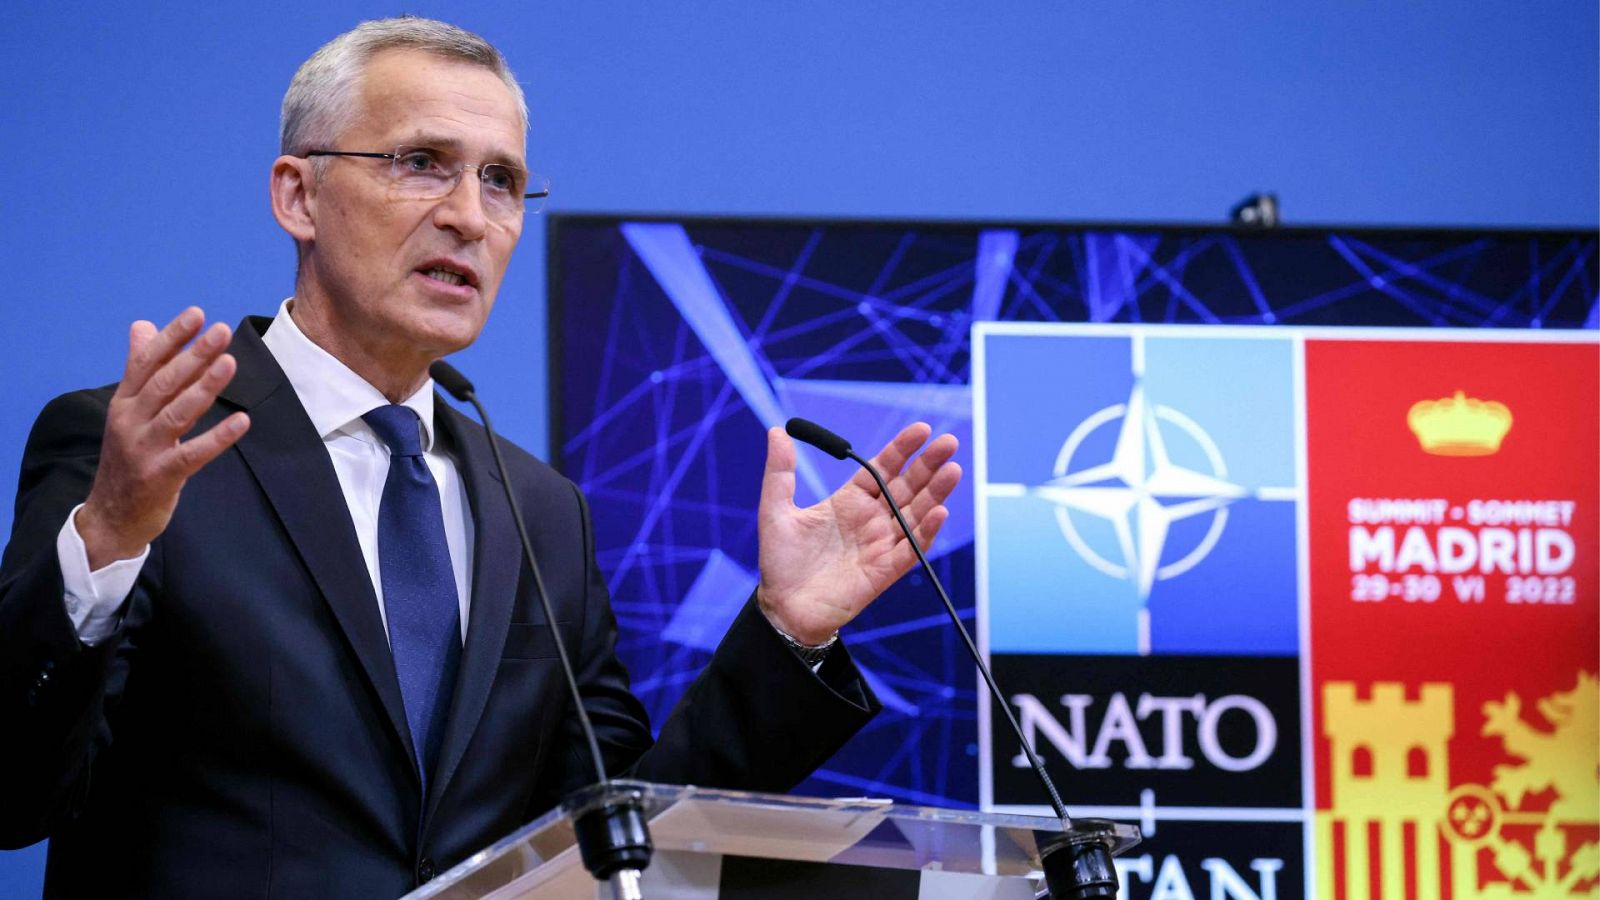 Cumbre de la OTAN | Una Alianza revitalizada en Madrid